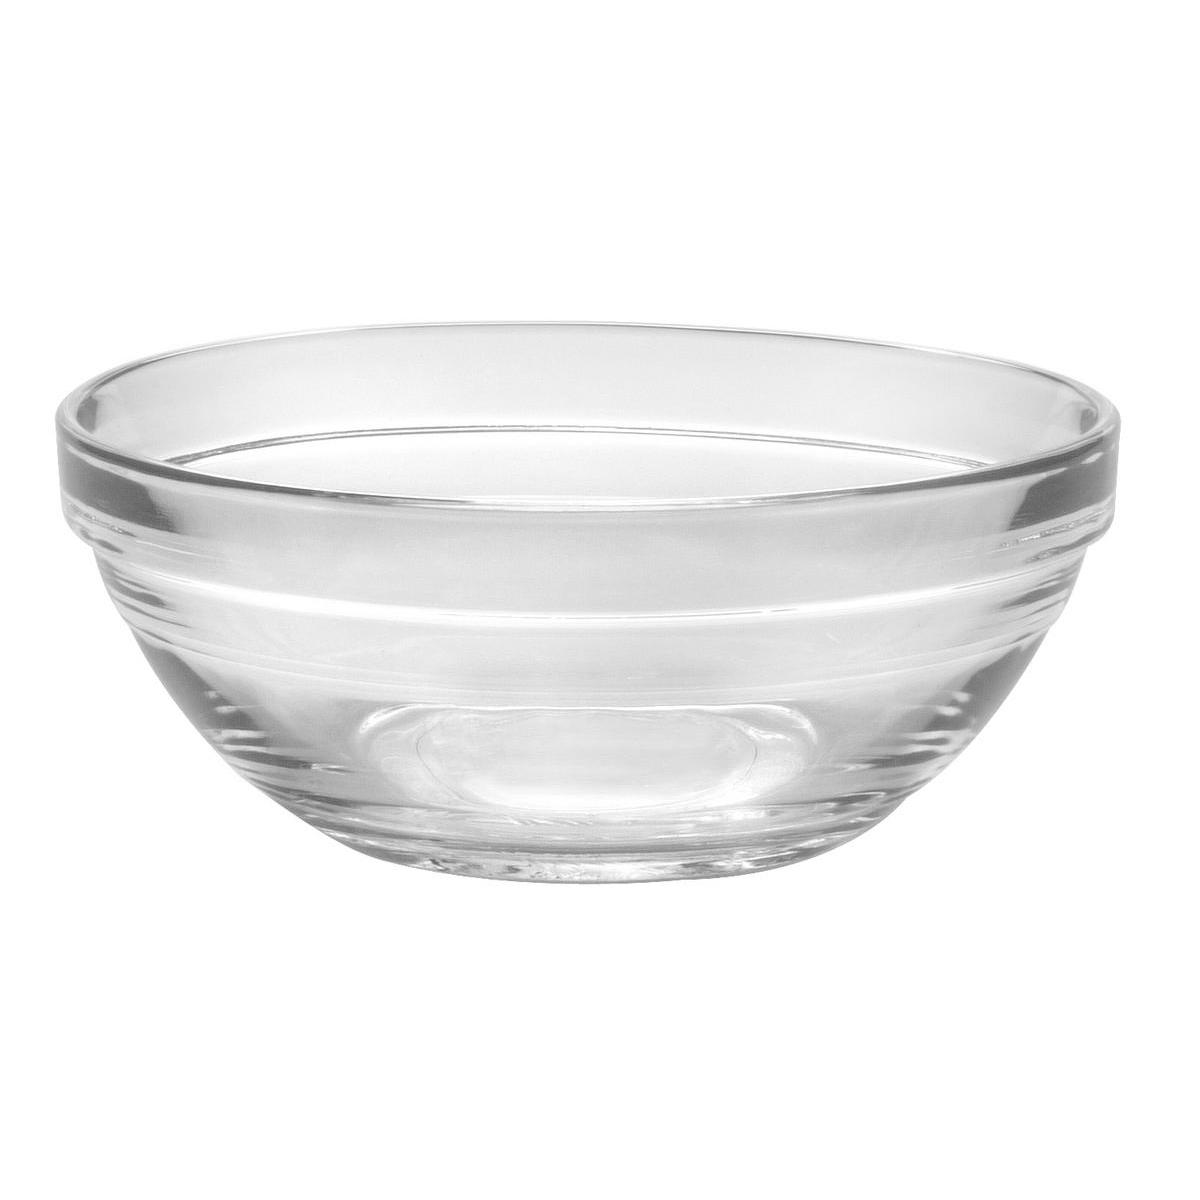 Coupelle ronde en verre - Diamètre 12 cm - Blanc transparent